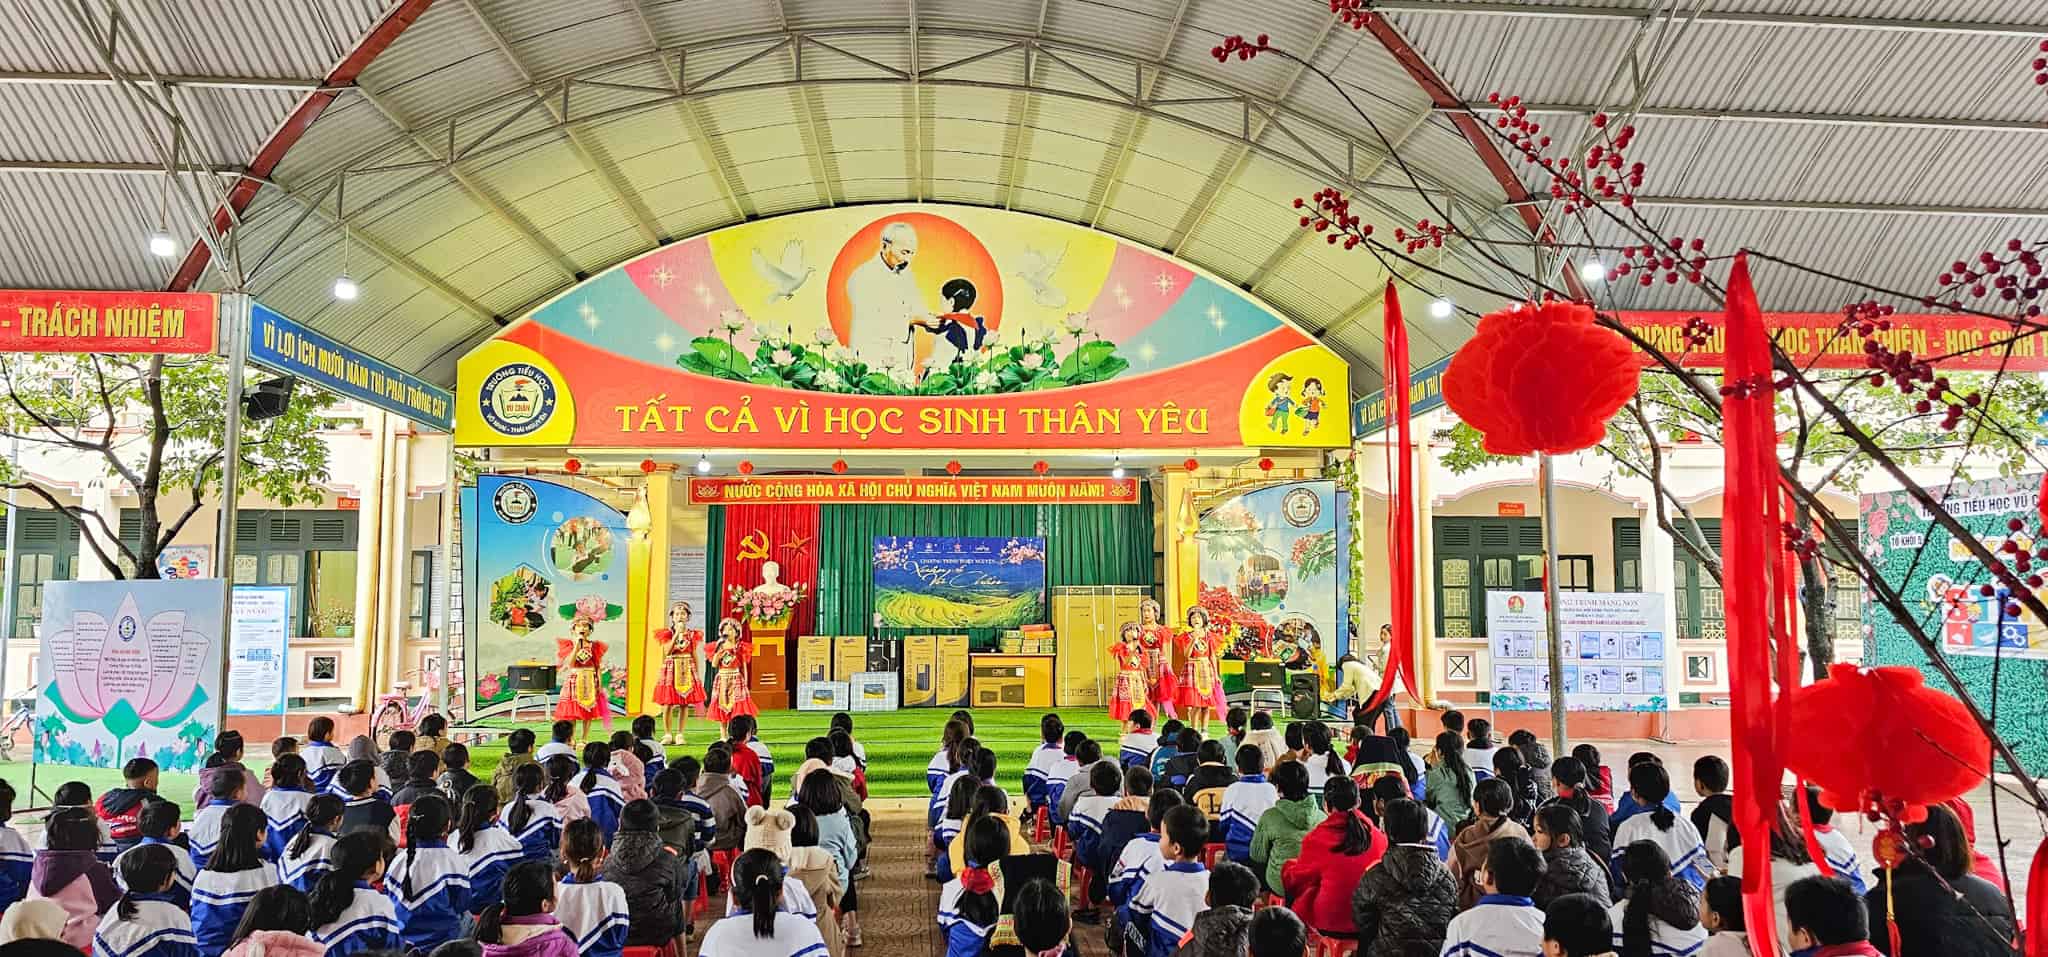 Trường Tiểu học Vũ Chấn, tại huyện vùng cao Võ Nhai, tỉnh Thái Nguyên